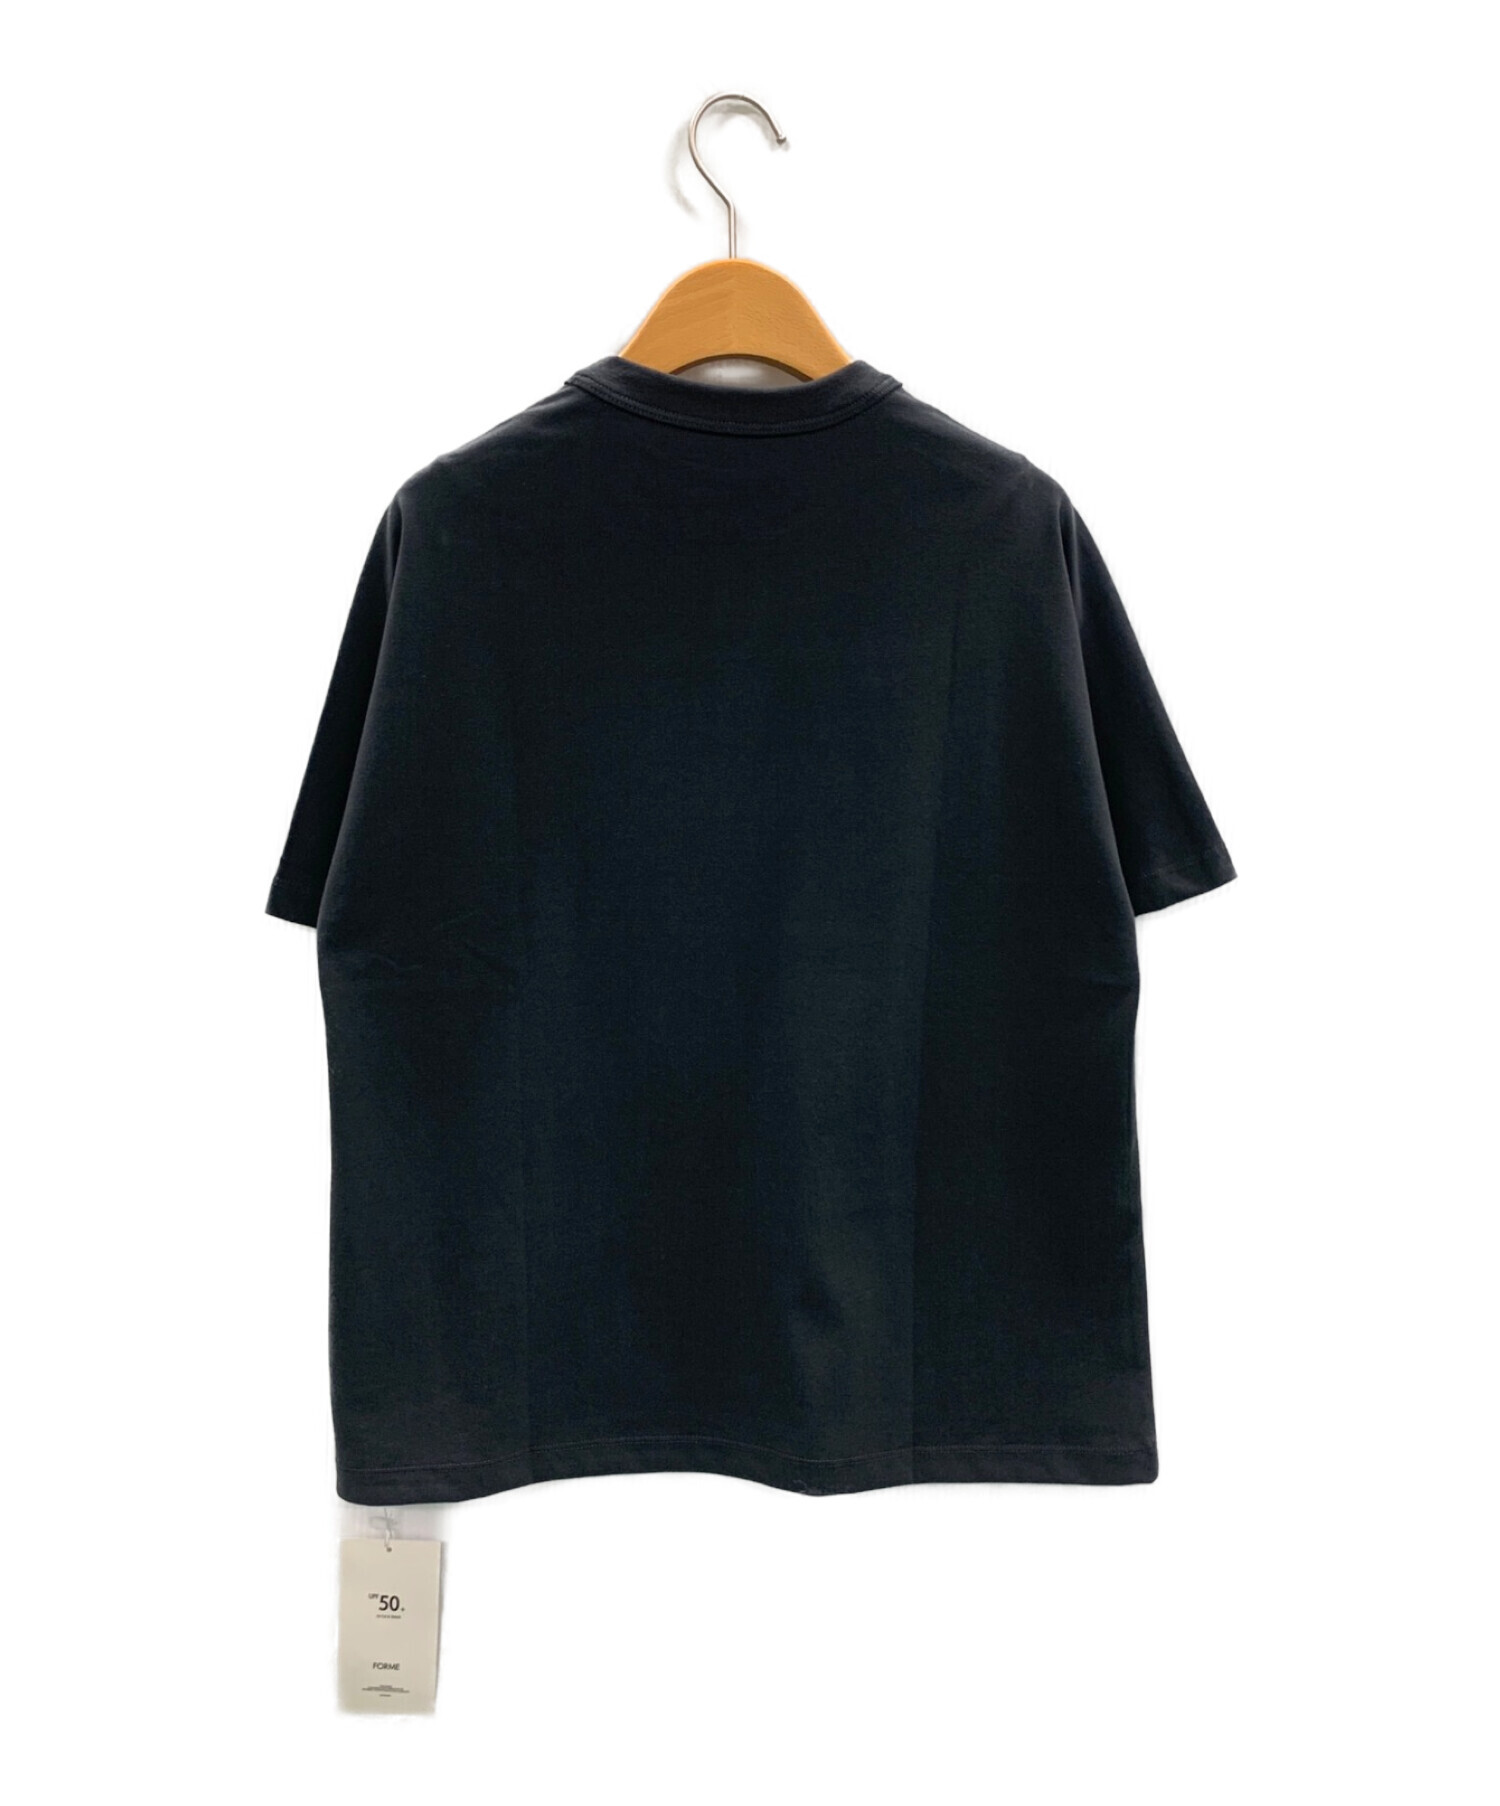 FORME (フォルメ) 東原亜希 (ヒガシハラアキ) UVカットTシャツ ブラック サイズ:F